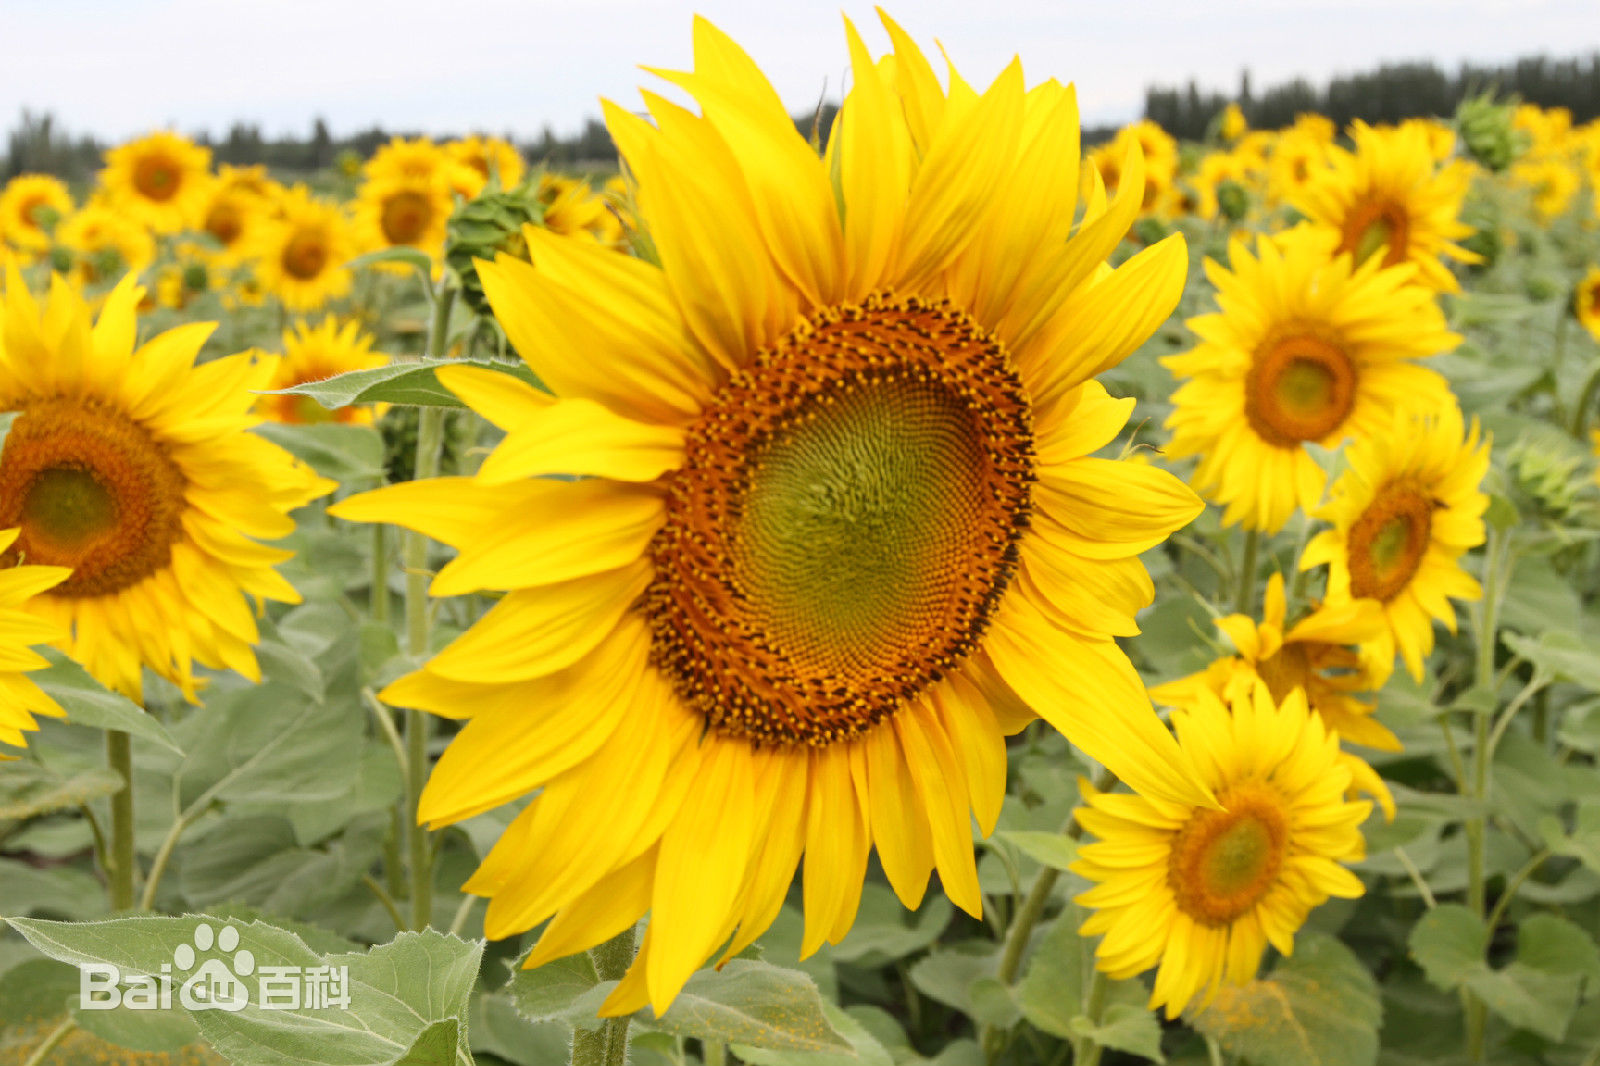 俄罗斯国花:向日葵及其植物文化